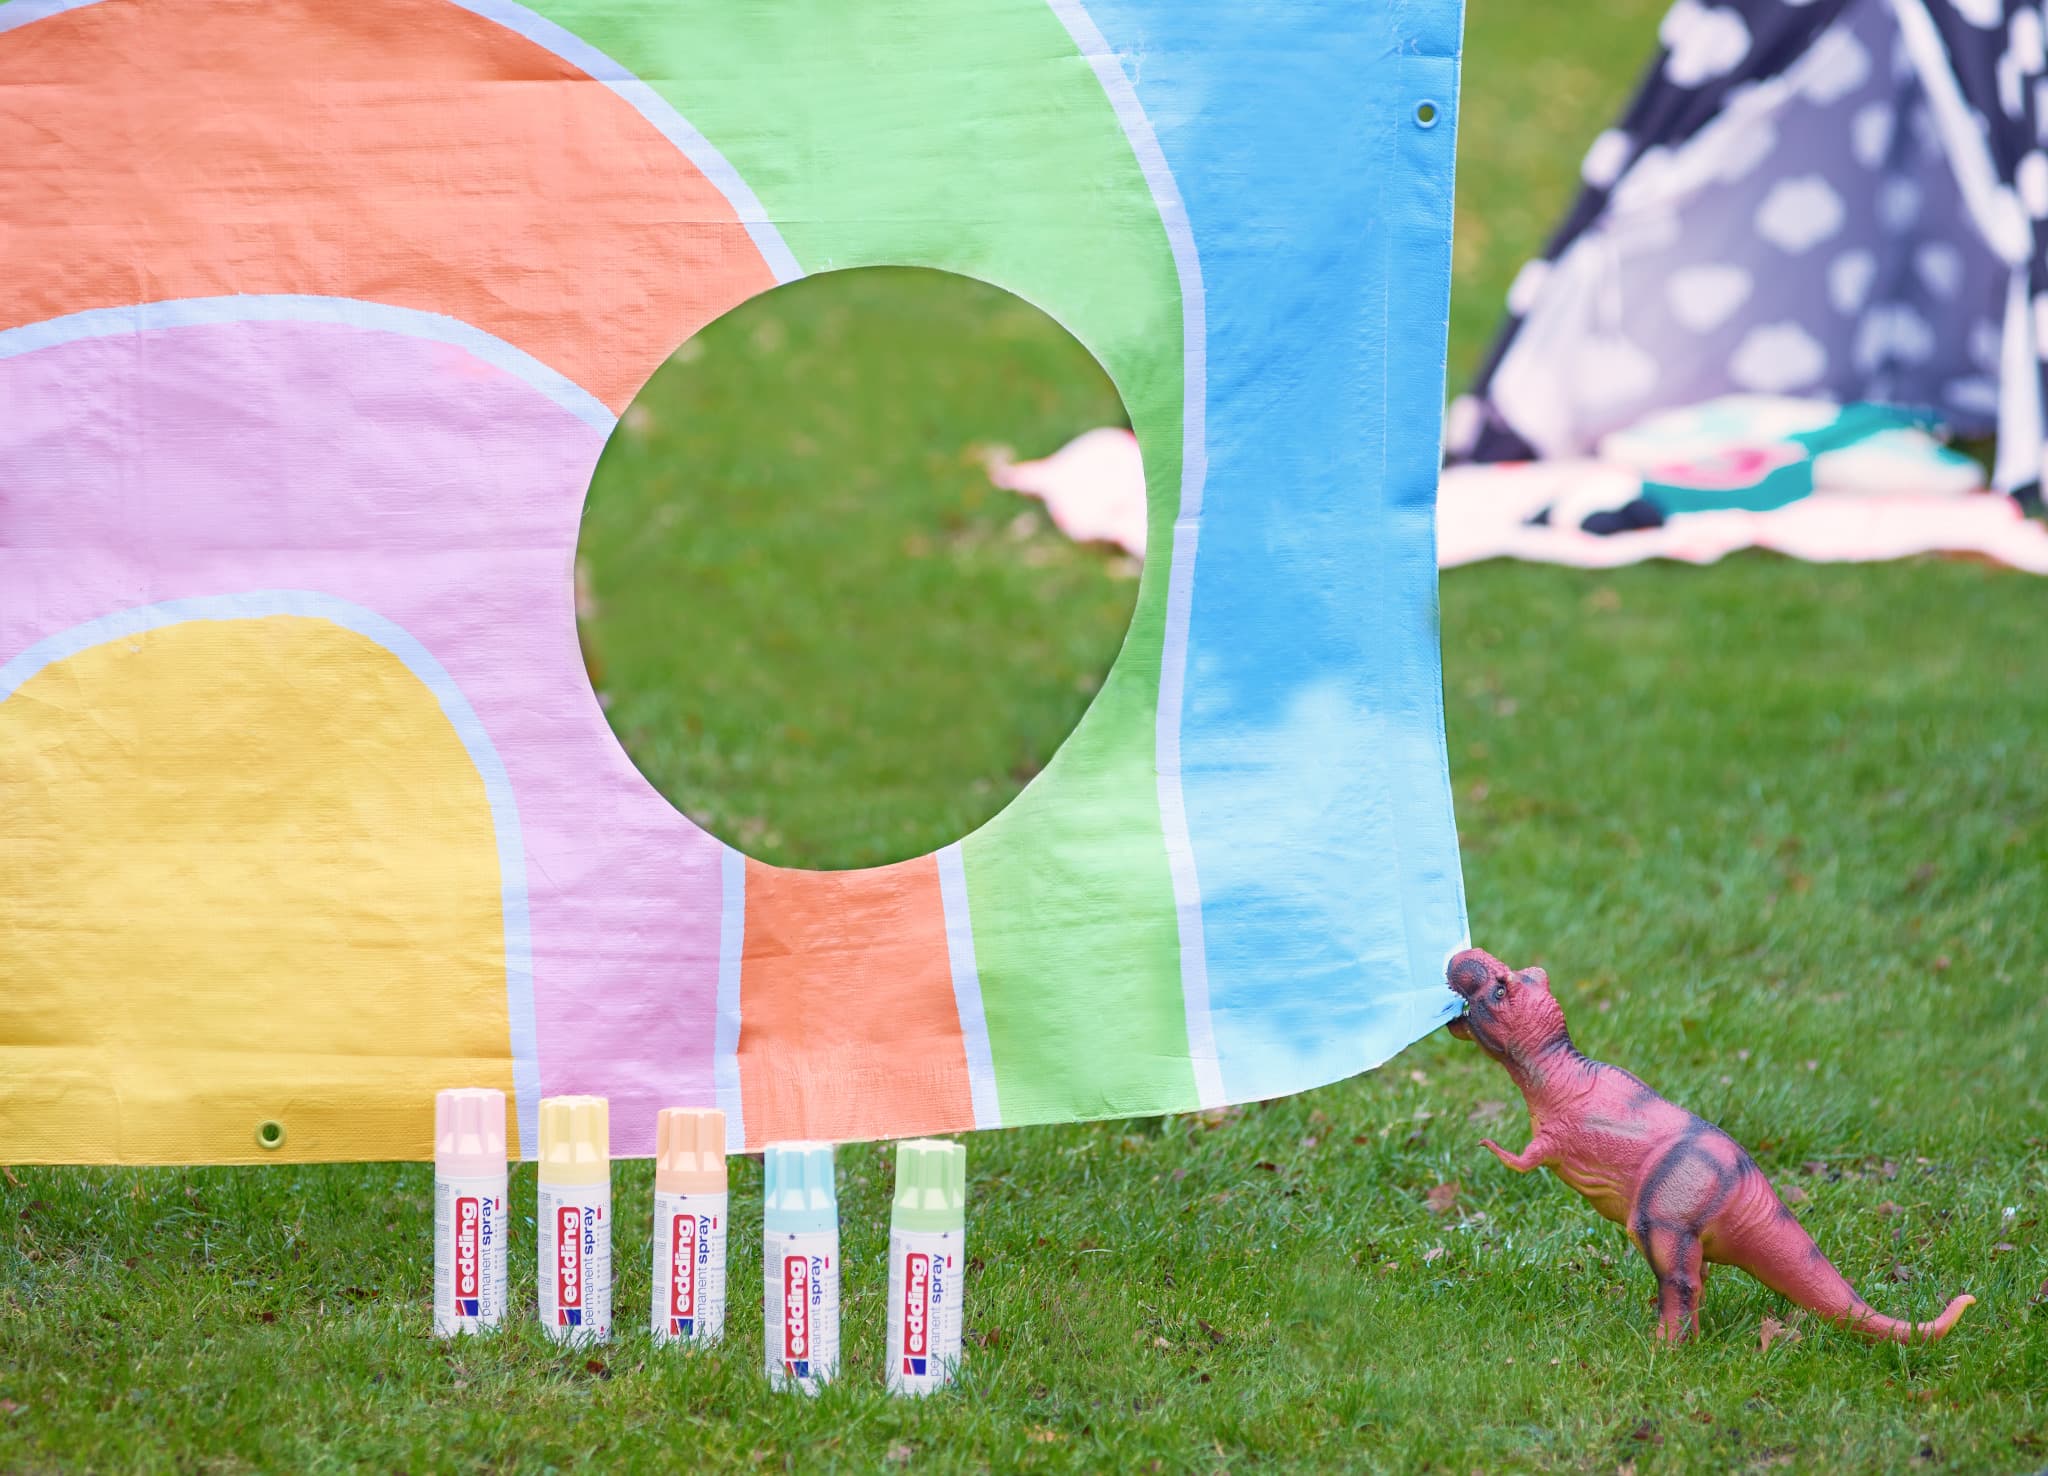 Ein farbenfroher Spieltunnel mit edding 5200 Permanentspray Acryllack Pastell & sanfte Farben auf Gras mit einem süßen Spielzeugdinosaurier, der neben einer Anordnung von Sonnenschutzflaschen steht.